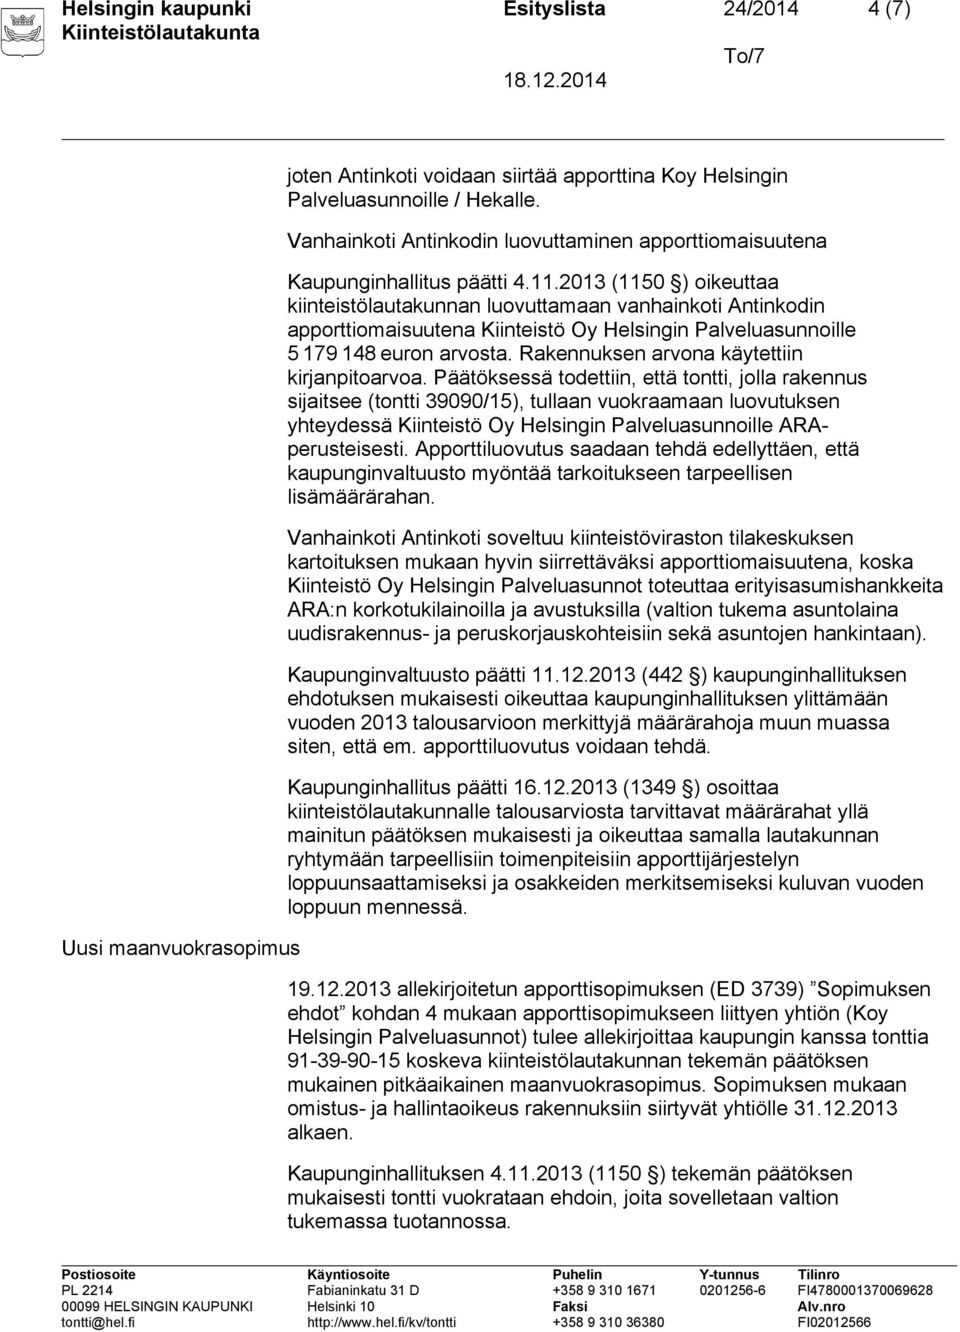 2013 (1150 ) oikeuttaa kiinteistölautakunnan luovuttamaan vanhainkoti Antinkodin apporttiomaisuutena Kiinteistö Oy Helsingin Palveluasunnoille 5 179 148 euron arvosta.